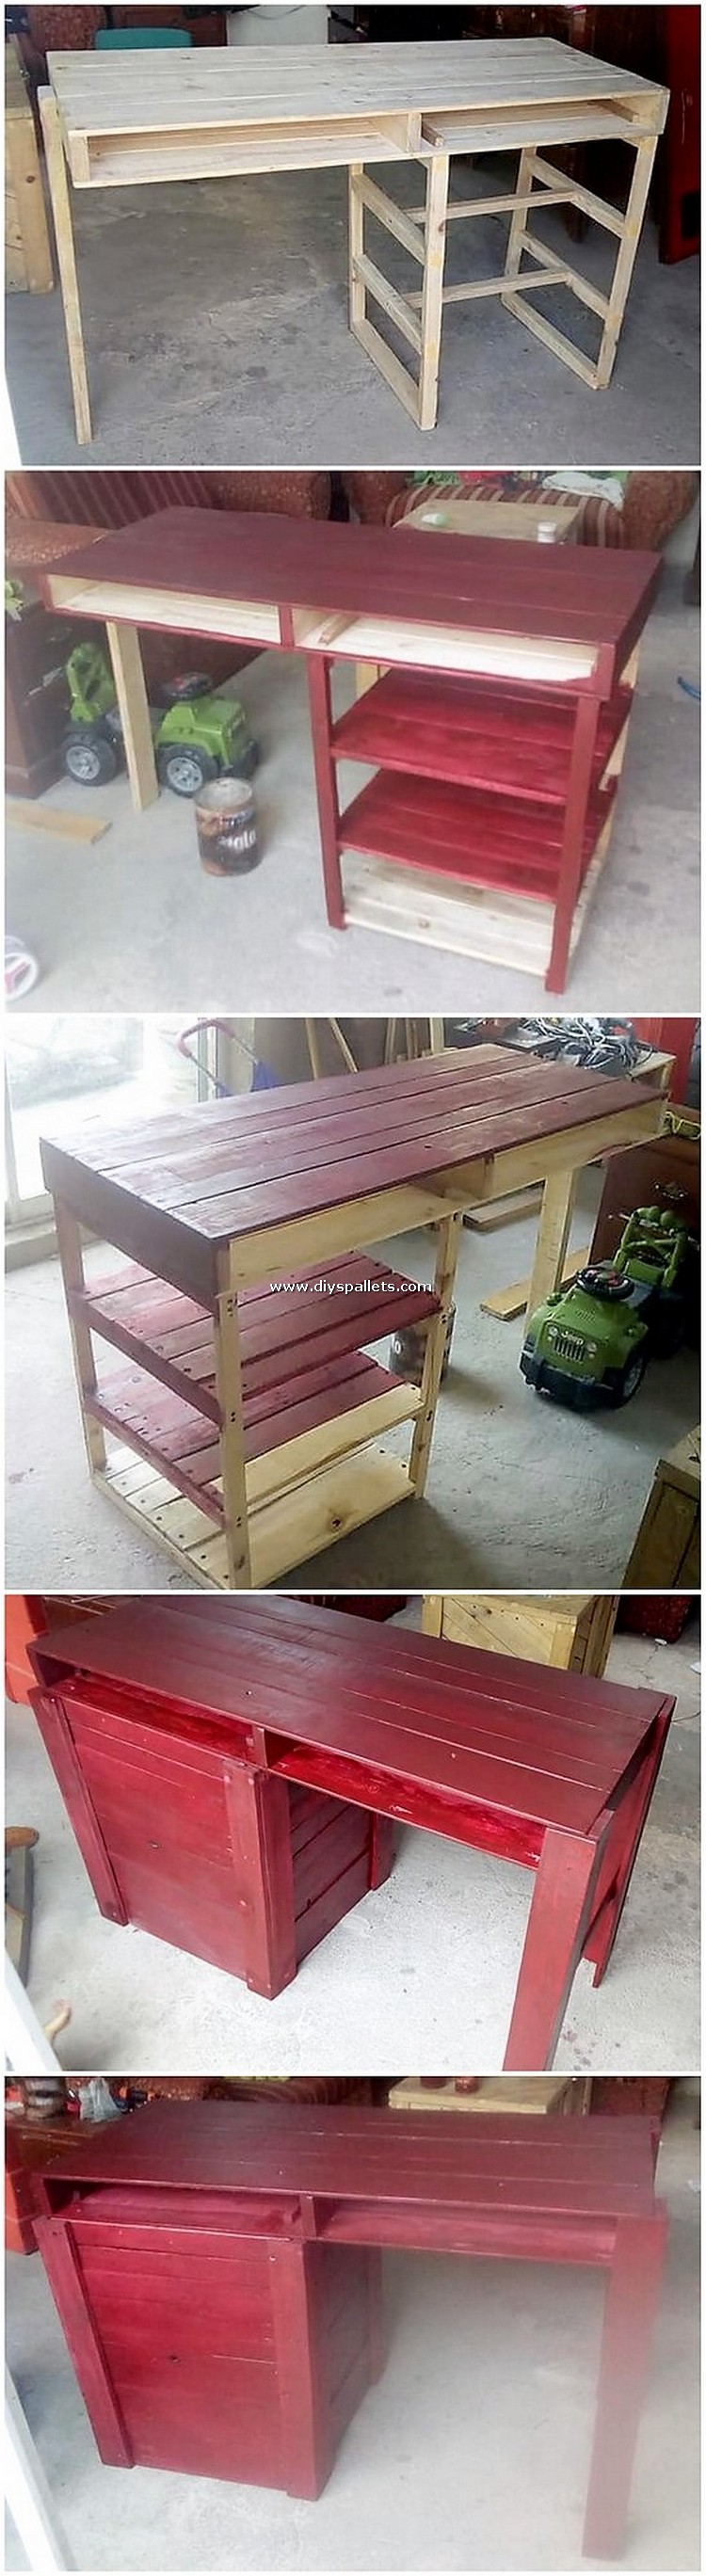 DIY Pallet Desk Table